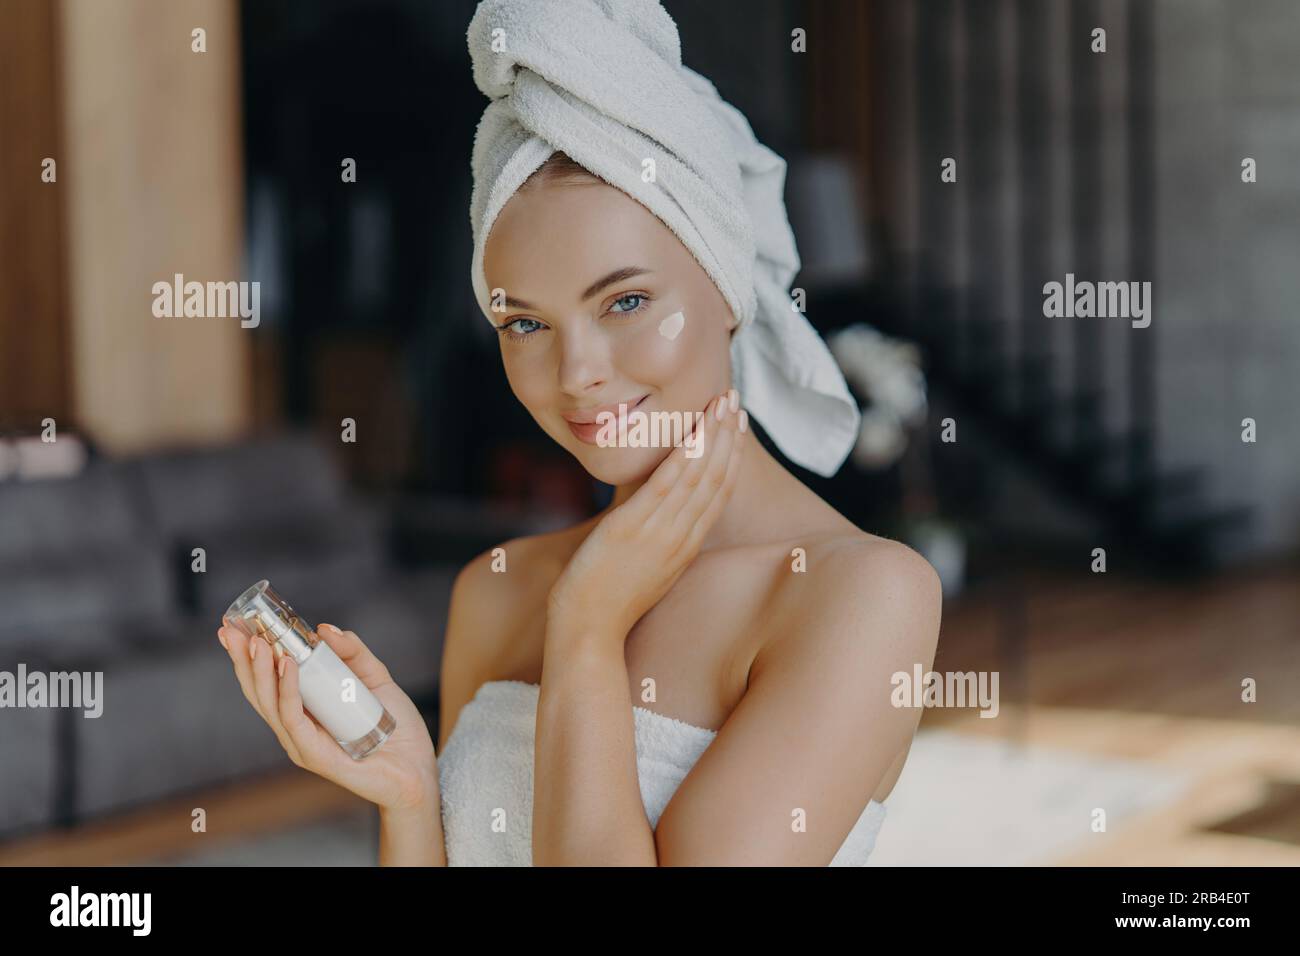 La donna europea applica la crema viso, idrata la pelle. Trucco minimo, asciugamano sulla testa. Interni domestici, trattamento viso. Procedura anti-invecchiamento. Foto Stock